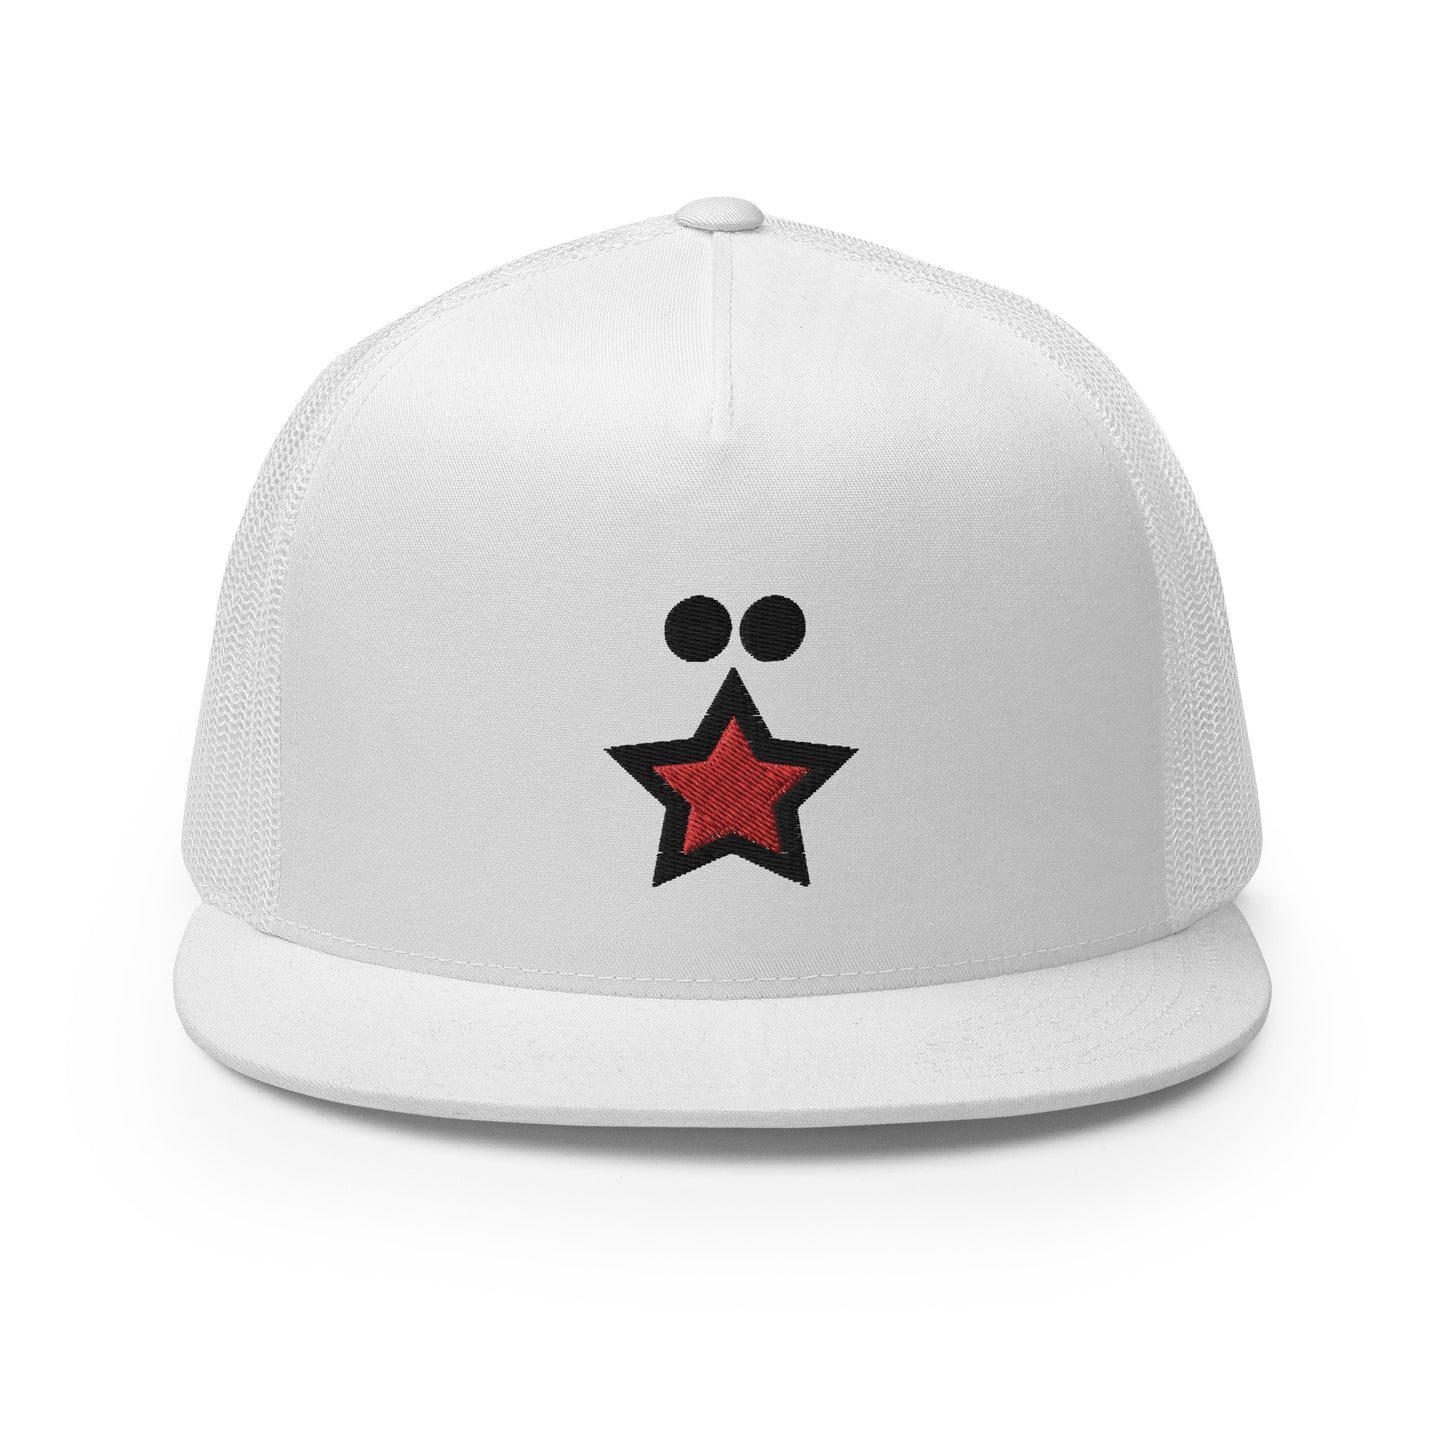 FCKSTR Hat / Trucker Cap I